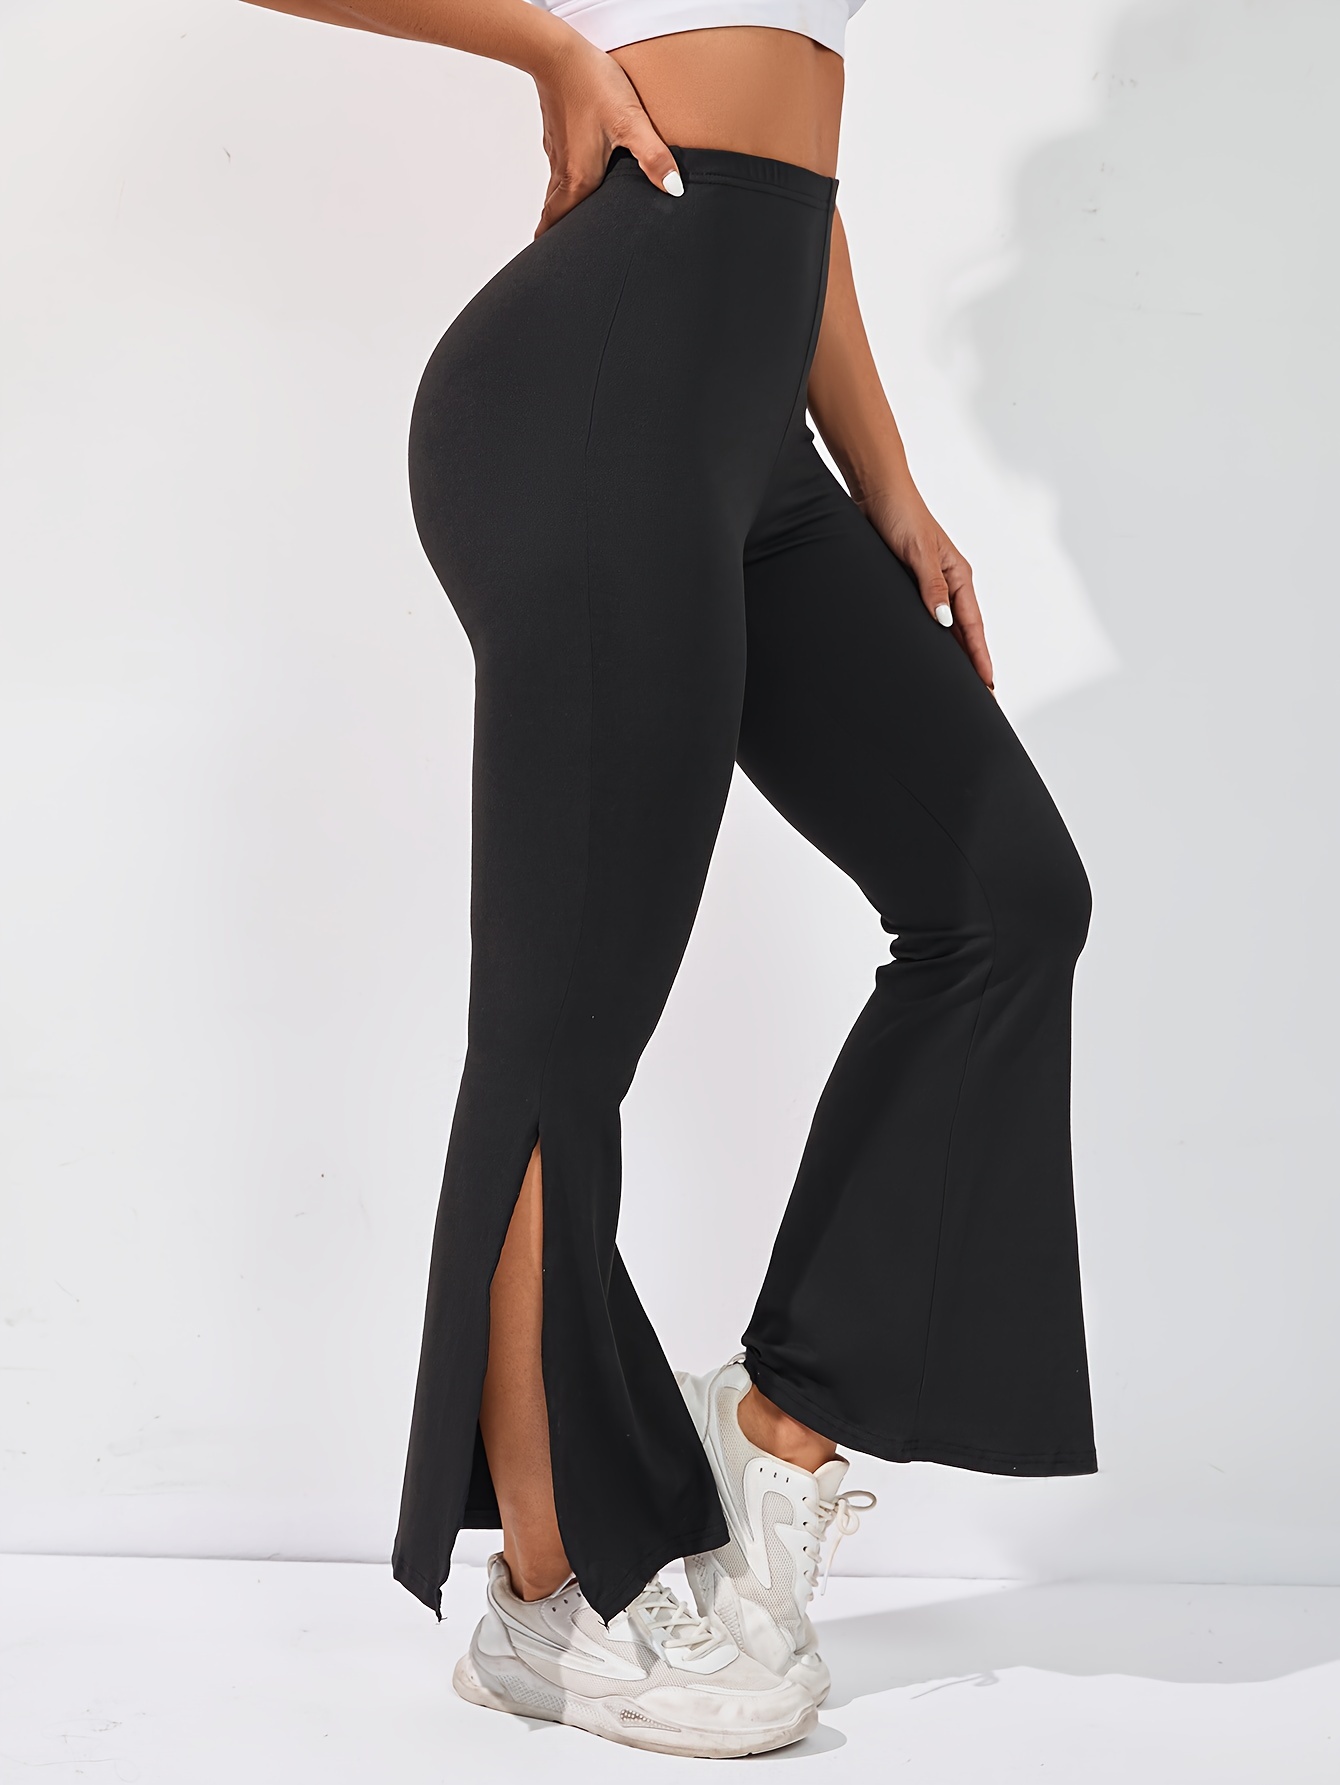 Women for Tight Trousers - Solid Split Hem Leggings (Color : Black